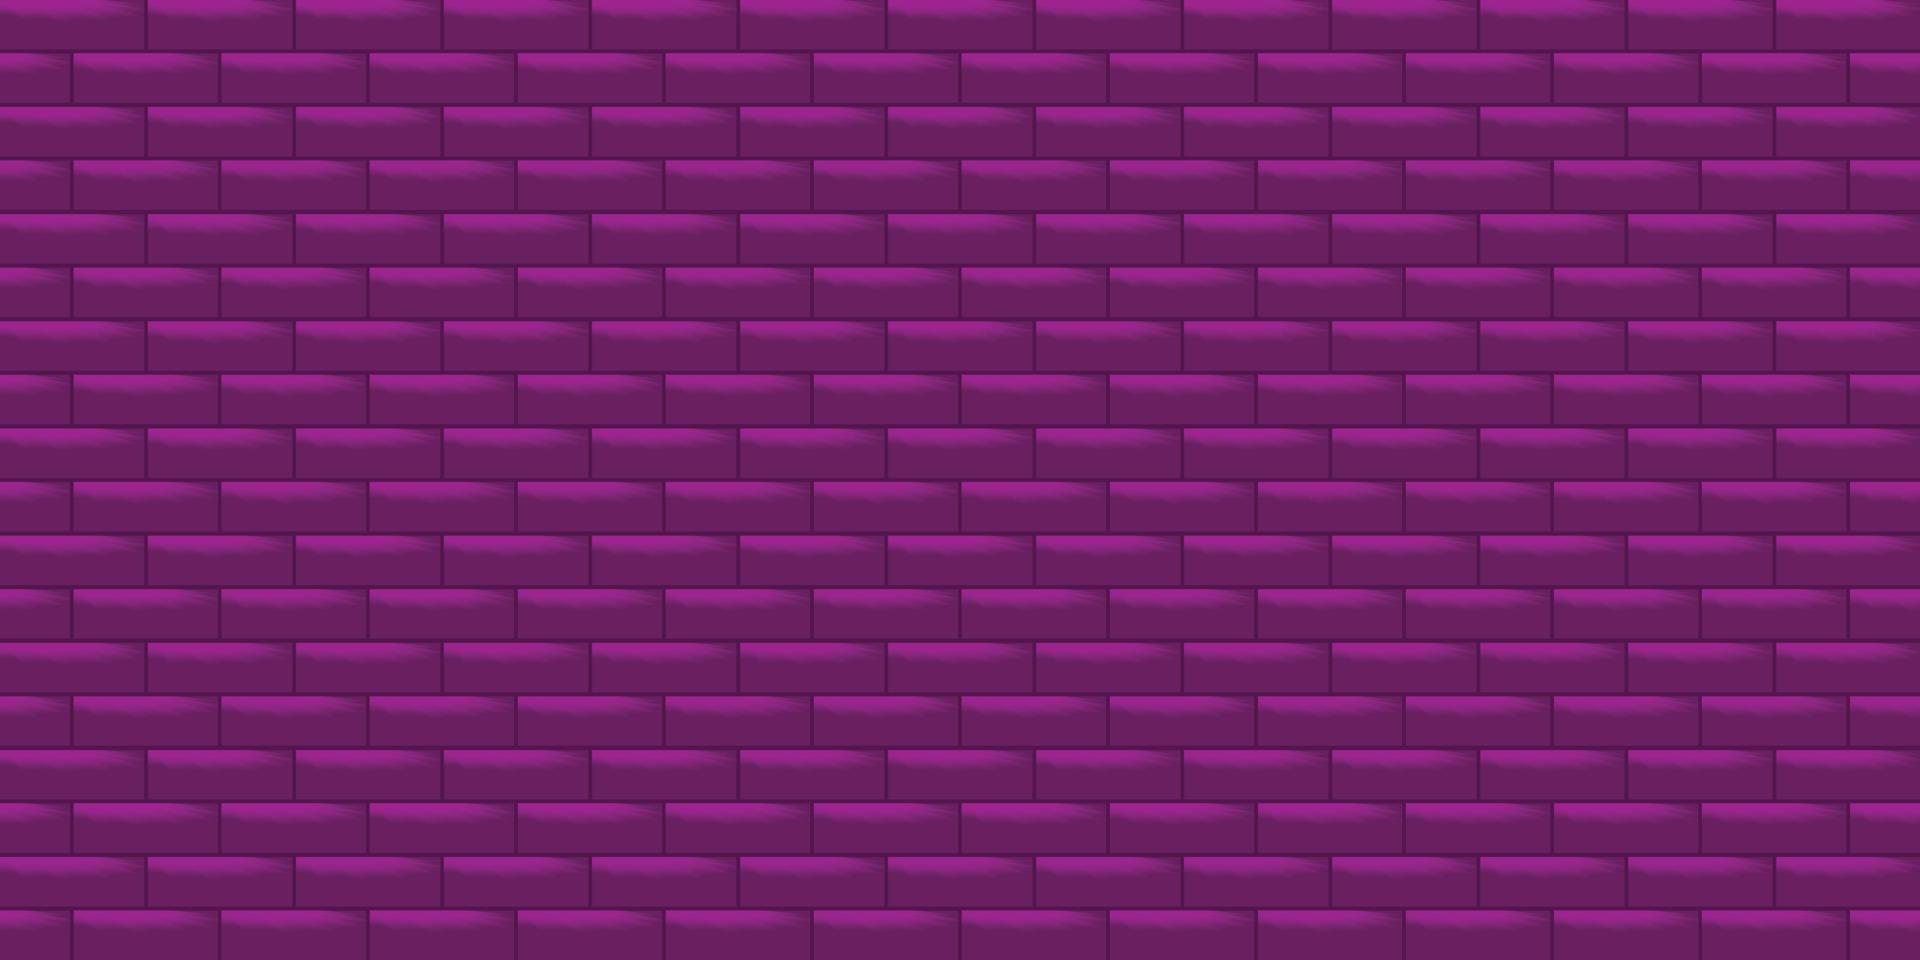 Saison Urlaub lila Mauer abstrakt Hintergründe Textur Gebäude Tapete Hintergrund Muster nahtlose Vektor Illustration eps